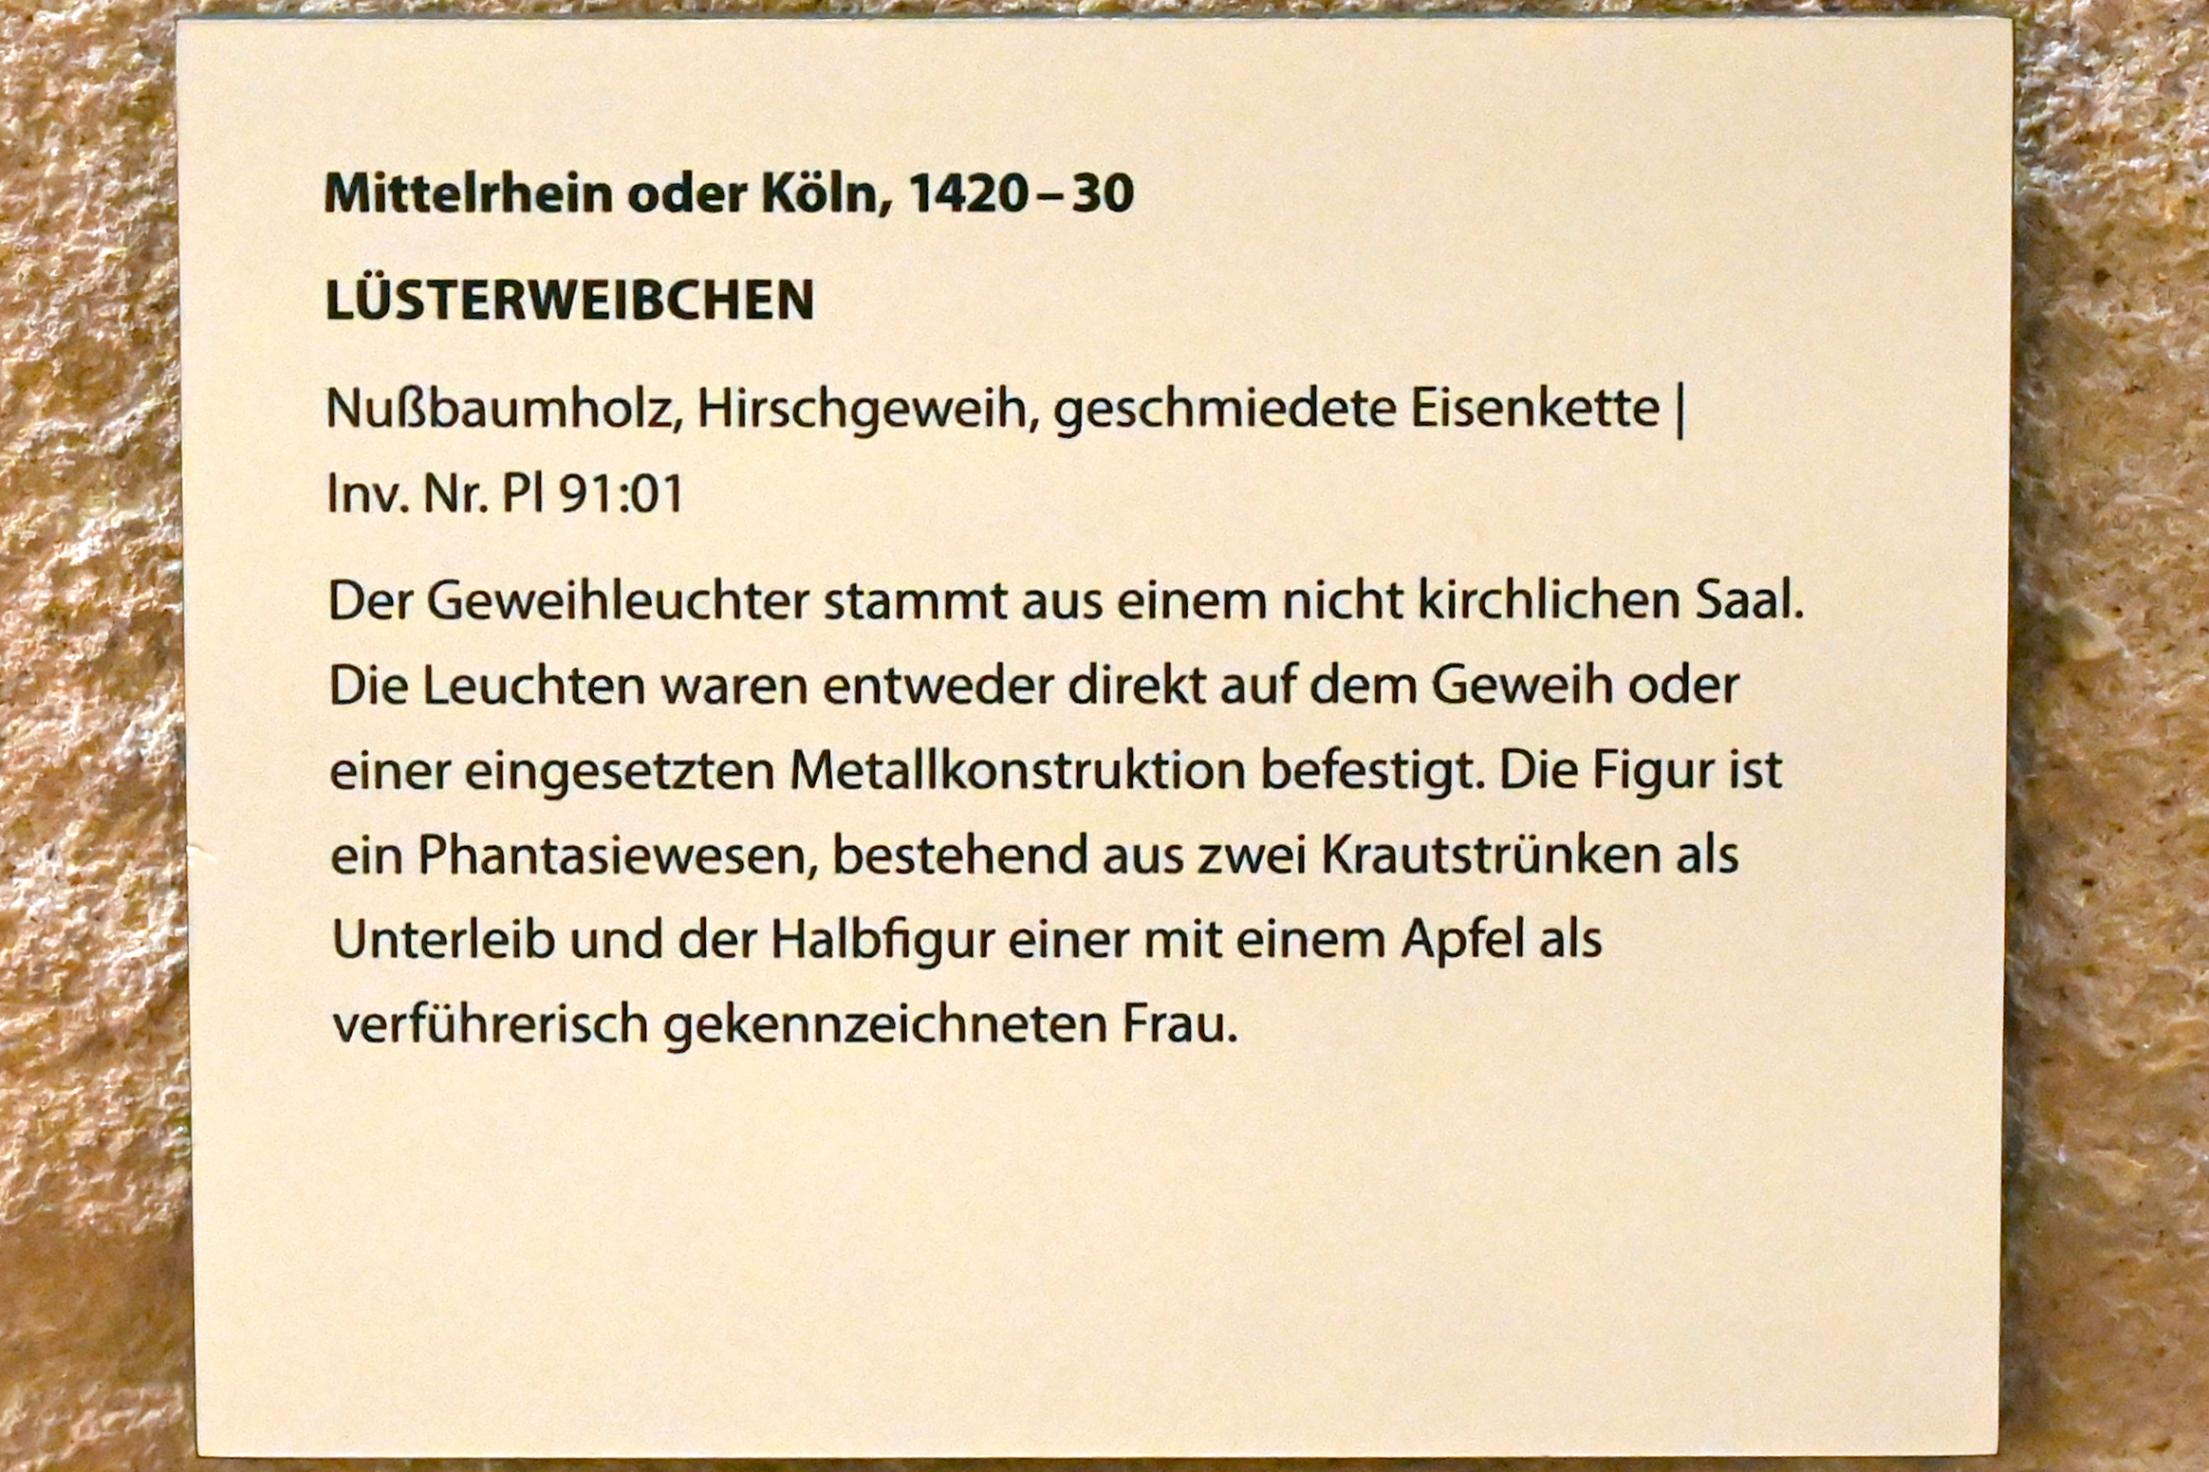 Lüsterweibchen, Darmstadt, Hessisches Landesmuseum, Kirchliche Schatzkammer, 1420–1430, Bild 2/2